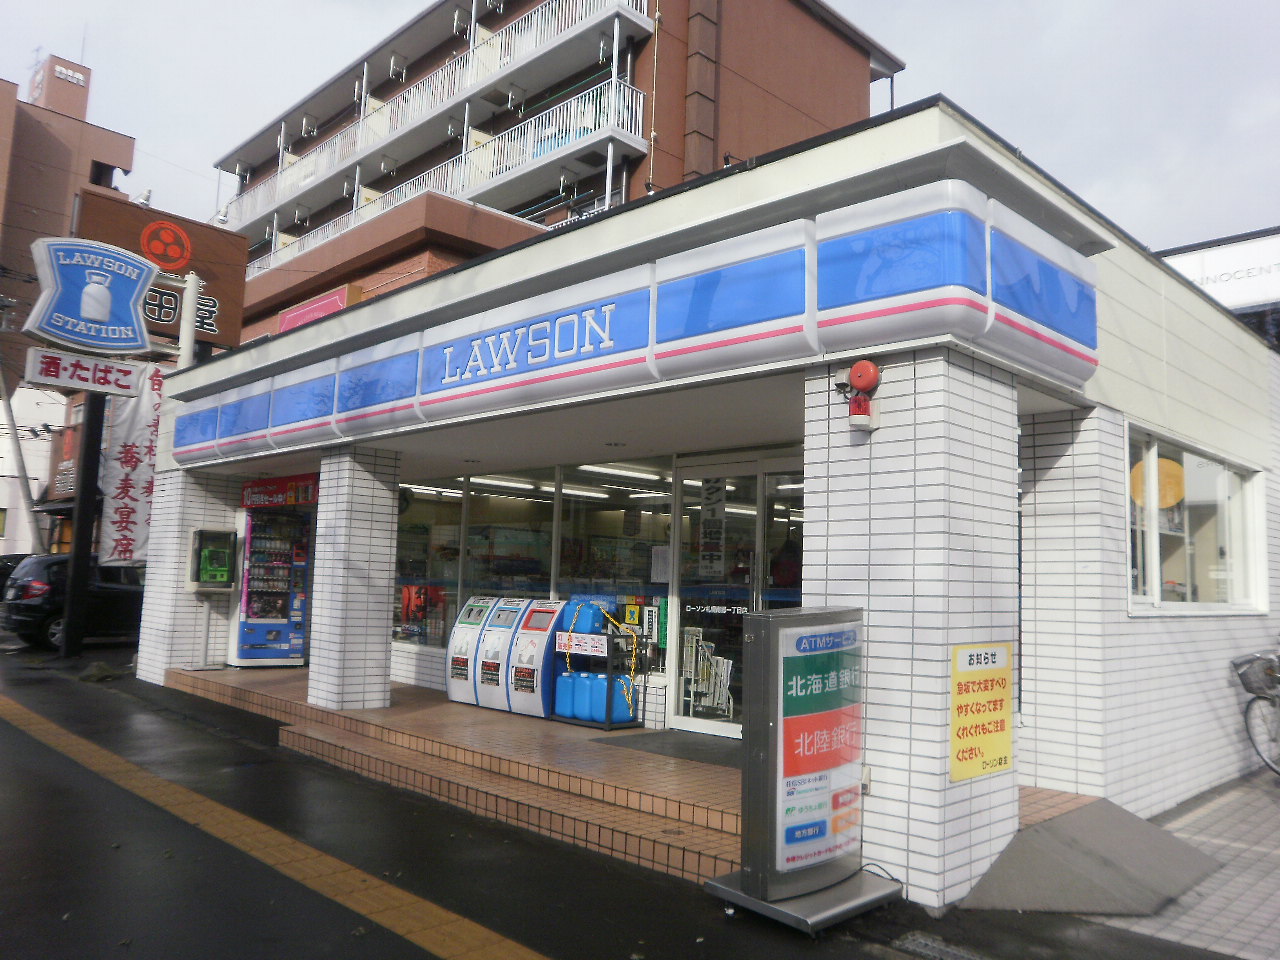 Convenience store. 155m until Lawson (convenience store)